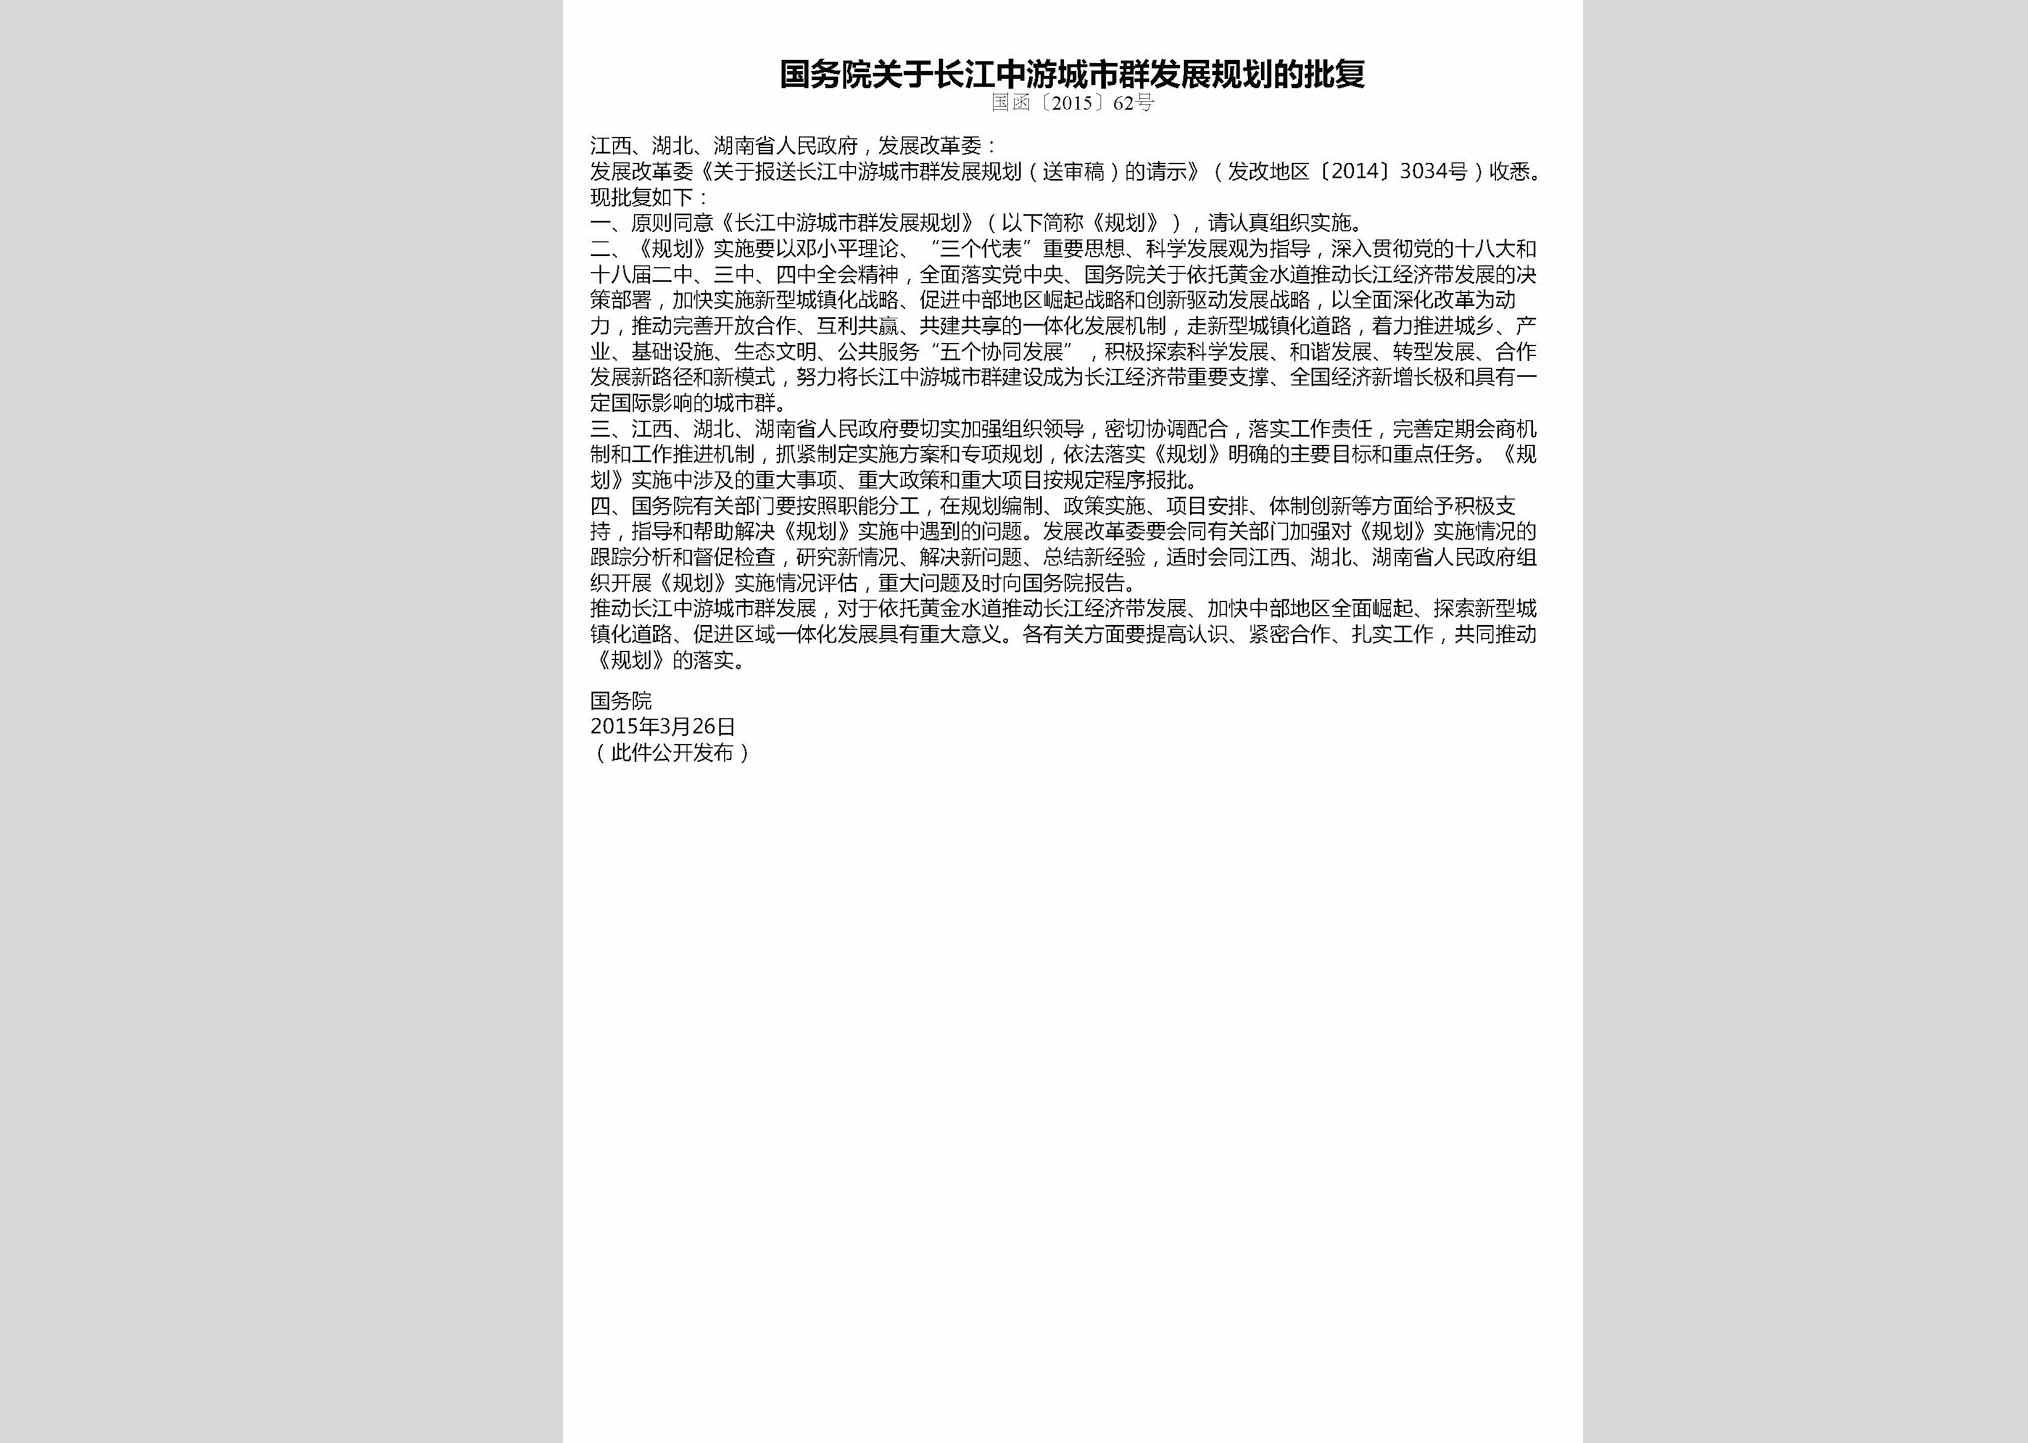 国函[2015]62号：国务院关于长江中游城市群发展规划的批复